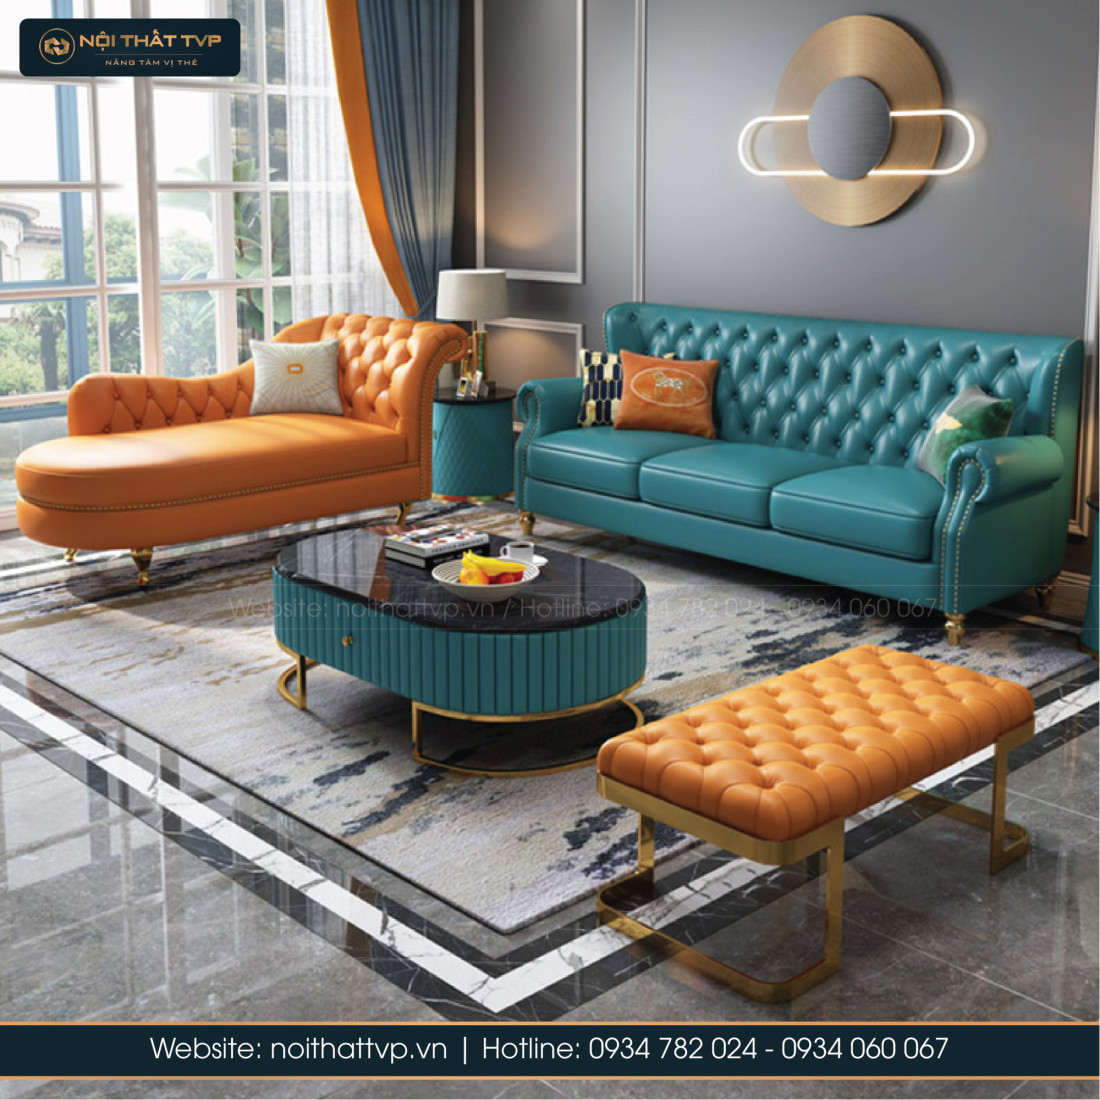 Combo bàn ghế Sofa và kệ tivi: Cùng Vinazon tạo nên một không gian phòng khách hoàn hảo với Bộ Sản Phẩm Combo bàn ghế sofa và kệ tivi đầy tiện nghi, sang trọng. Thiết kế đẹp mắt, chất liệu cao cấp, giá cả hợp lý. Hãy xem hình ảnh để tìm kiếm cảm hứng phong cách mới cho ngôi nhà của bạn.